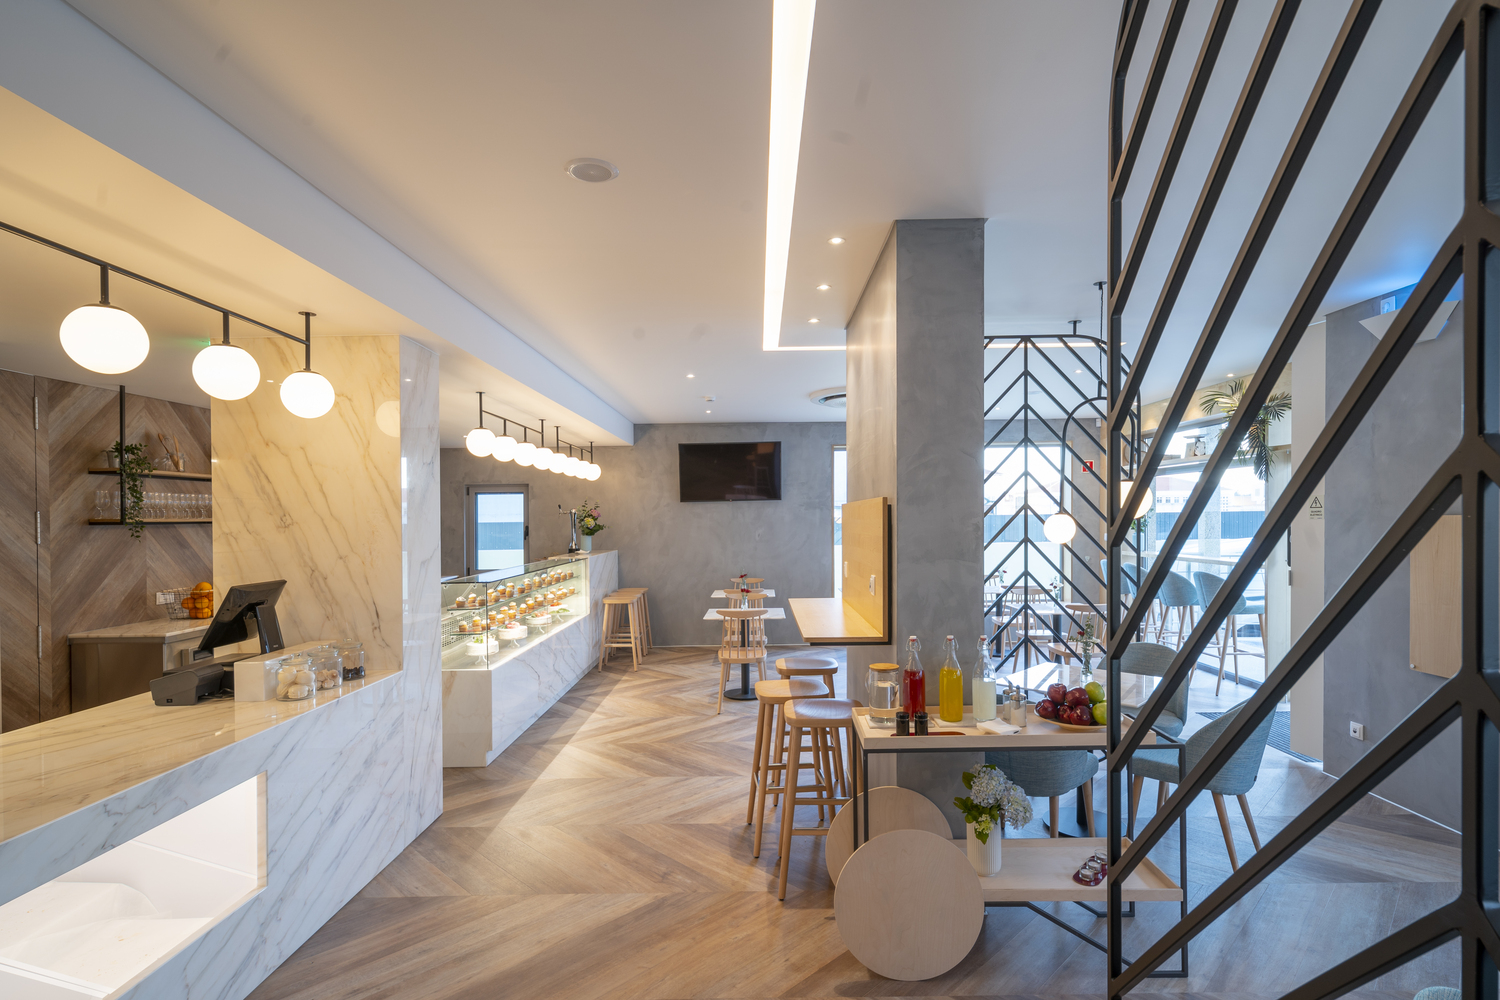 بازسازی و طراحی داخلی منحصر به فرد نانوایی و کافه قنادی